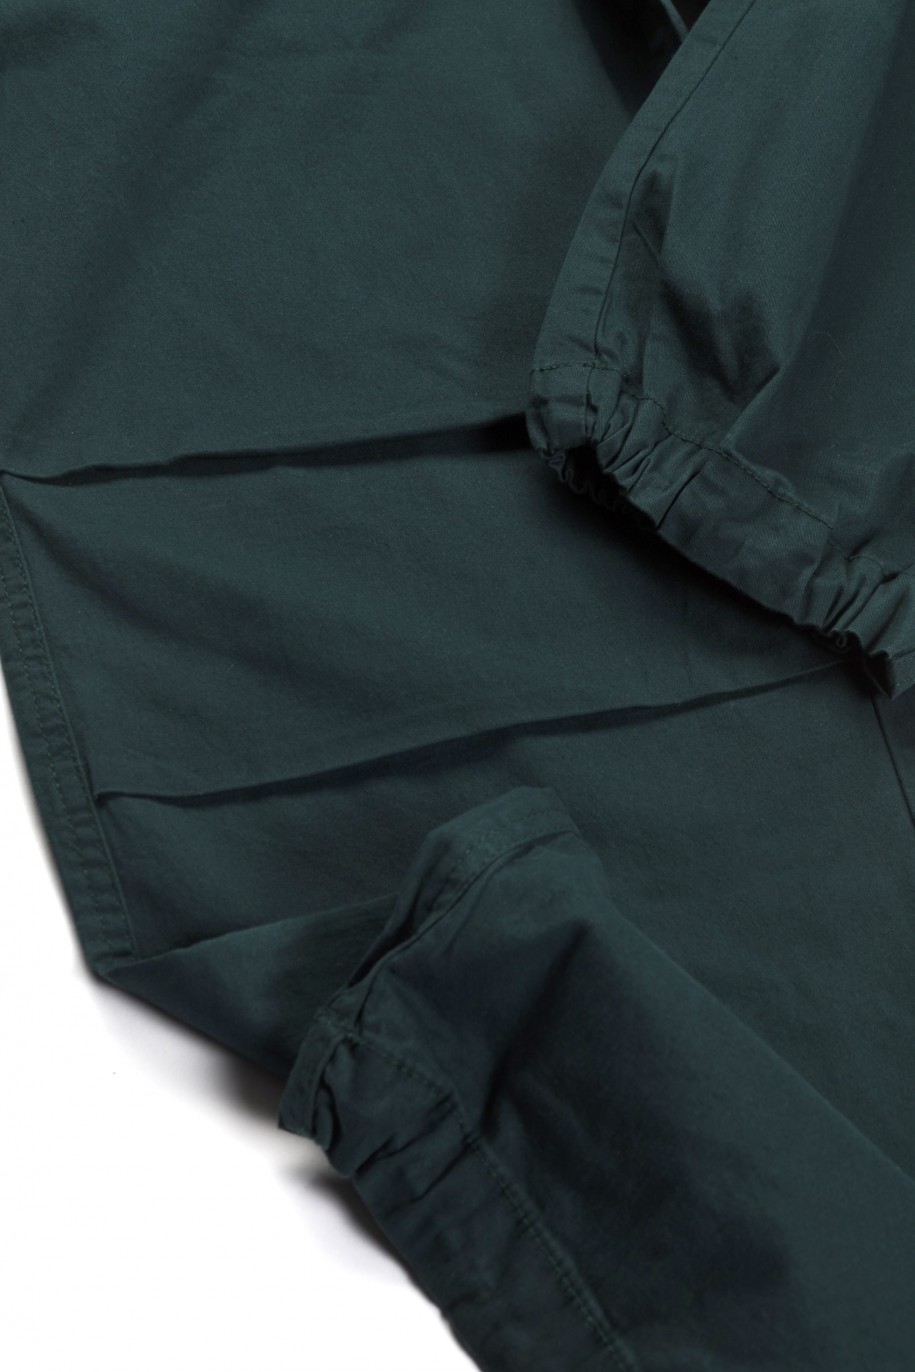 Zielone spodnie typu parachute z zaszewkami na nogawkach - 46310